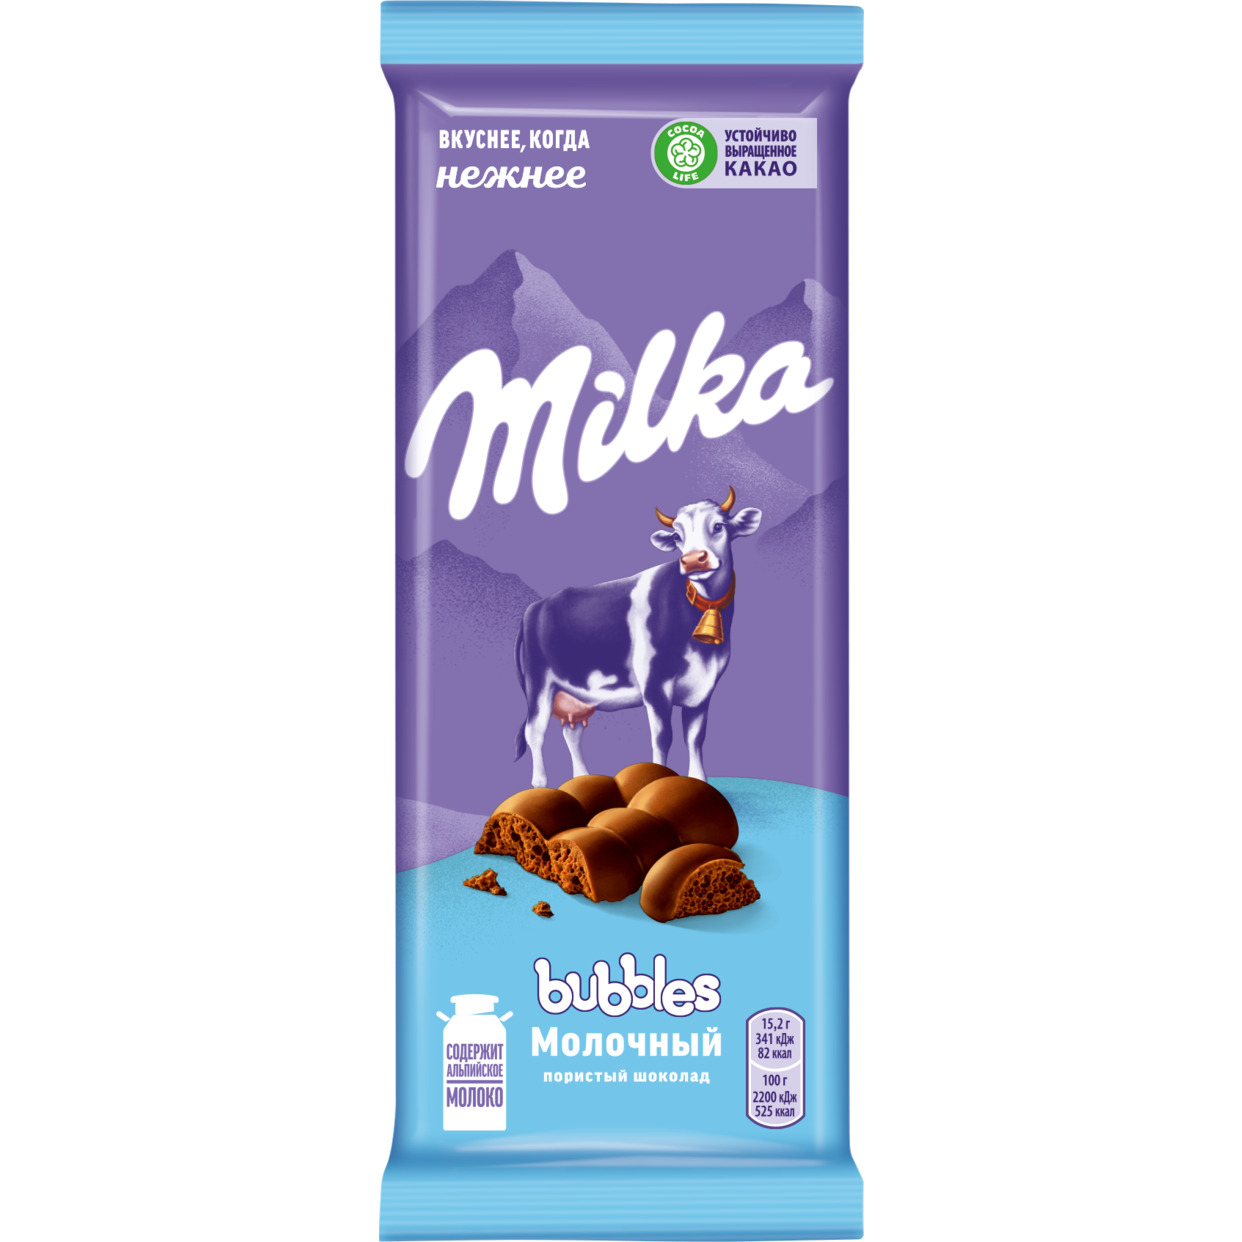 Шоколад молочный пористый Milka Bubbles, 76г по акции в Пятерочке